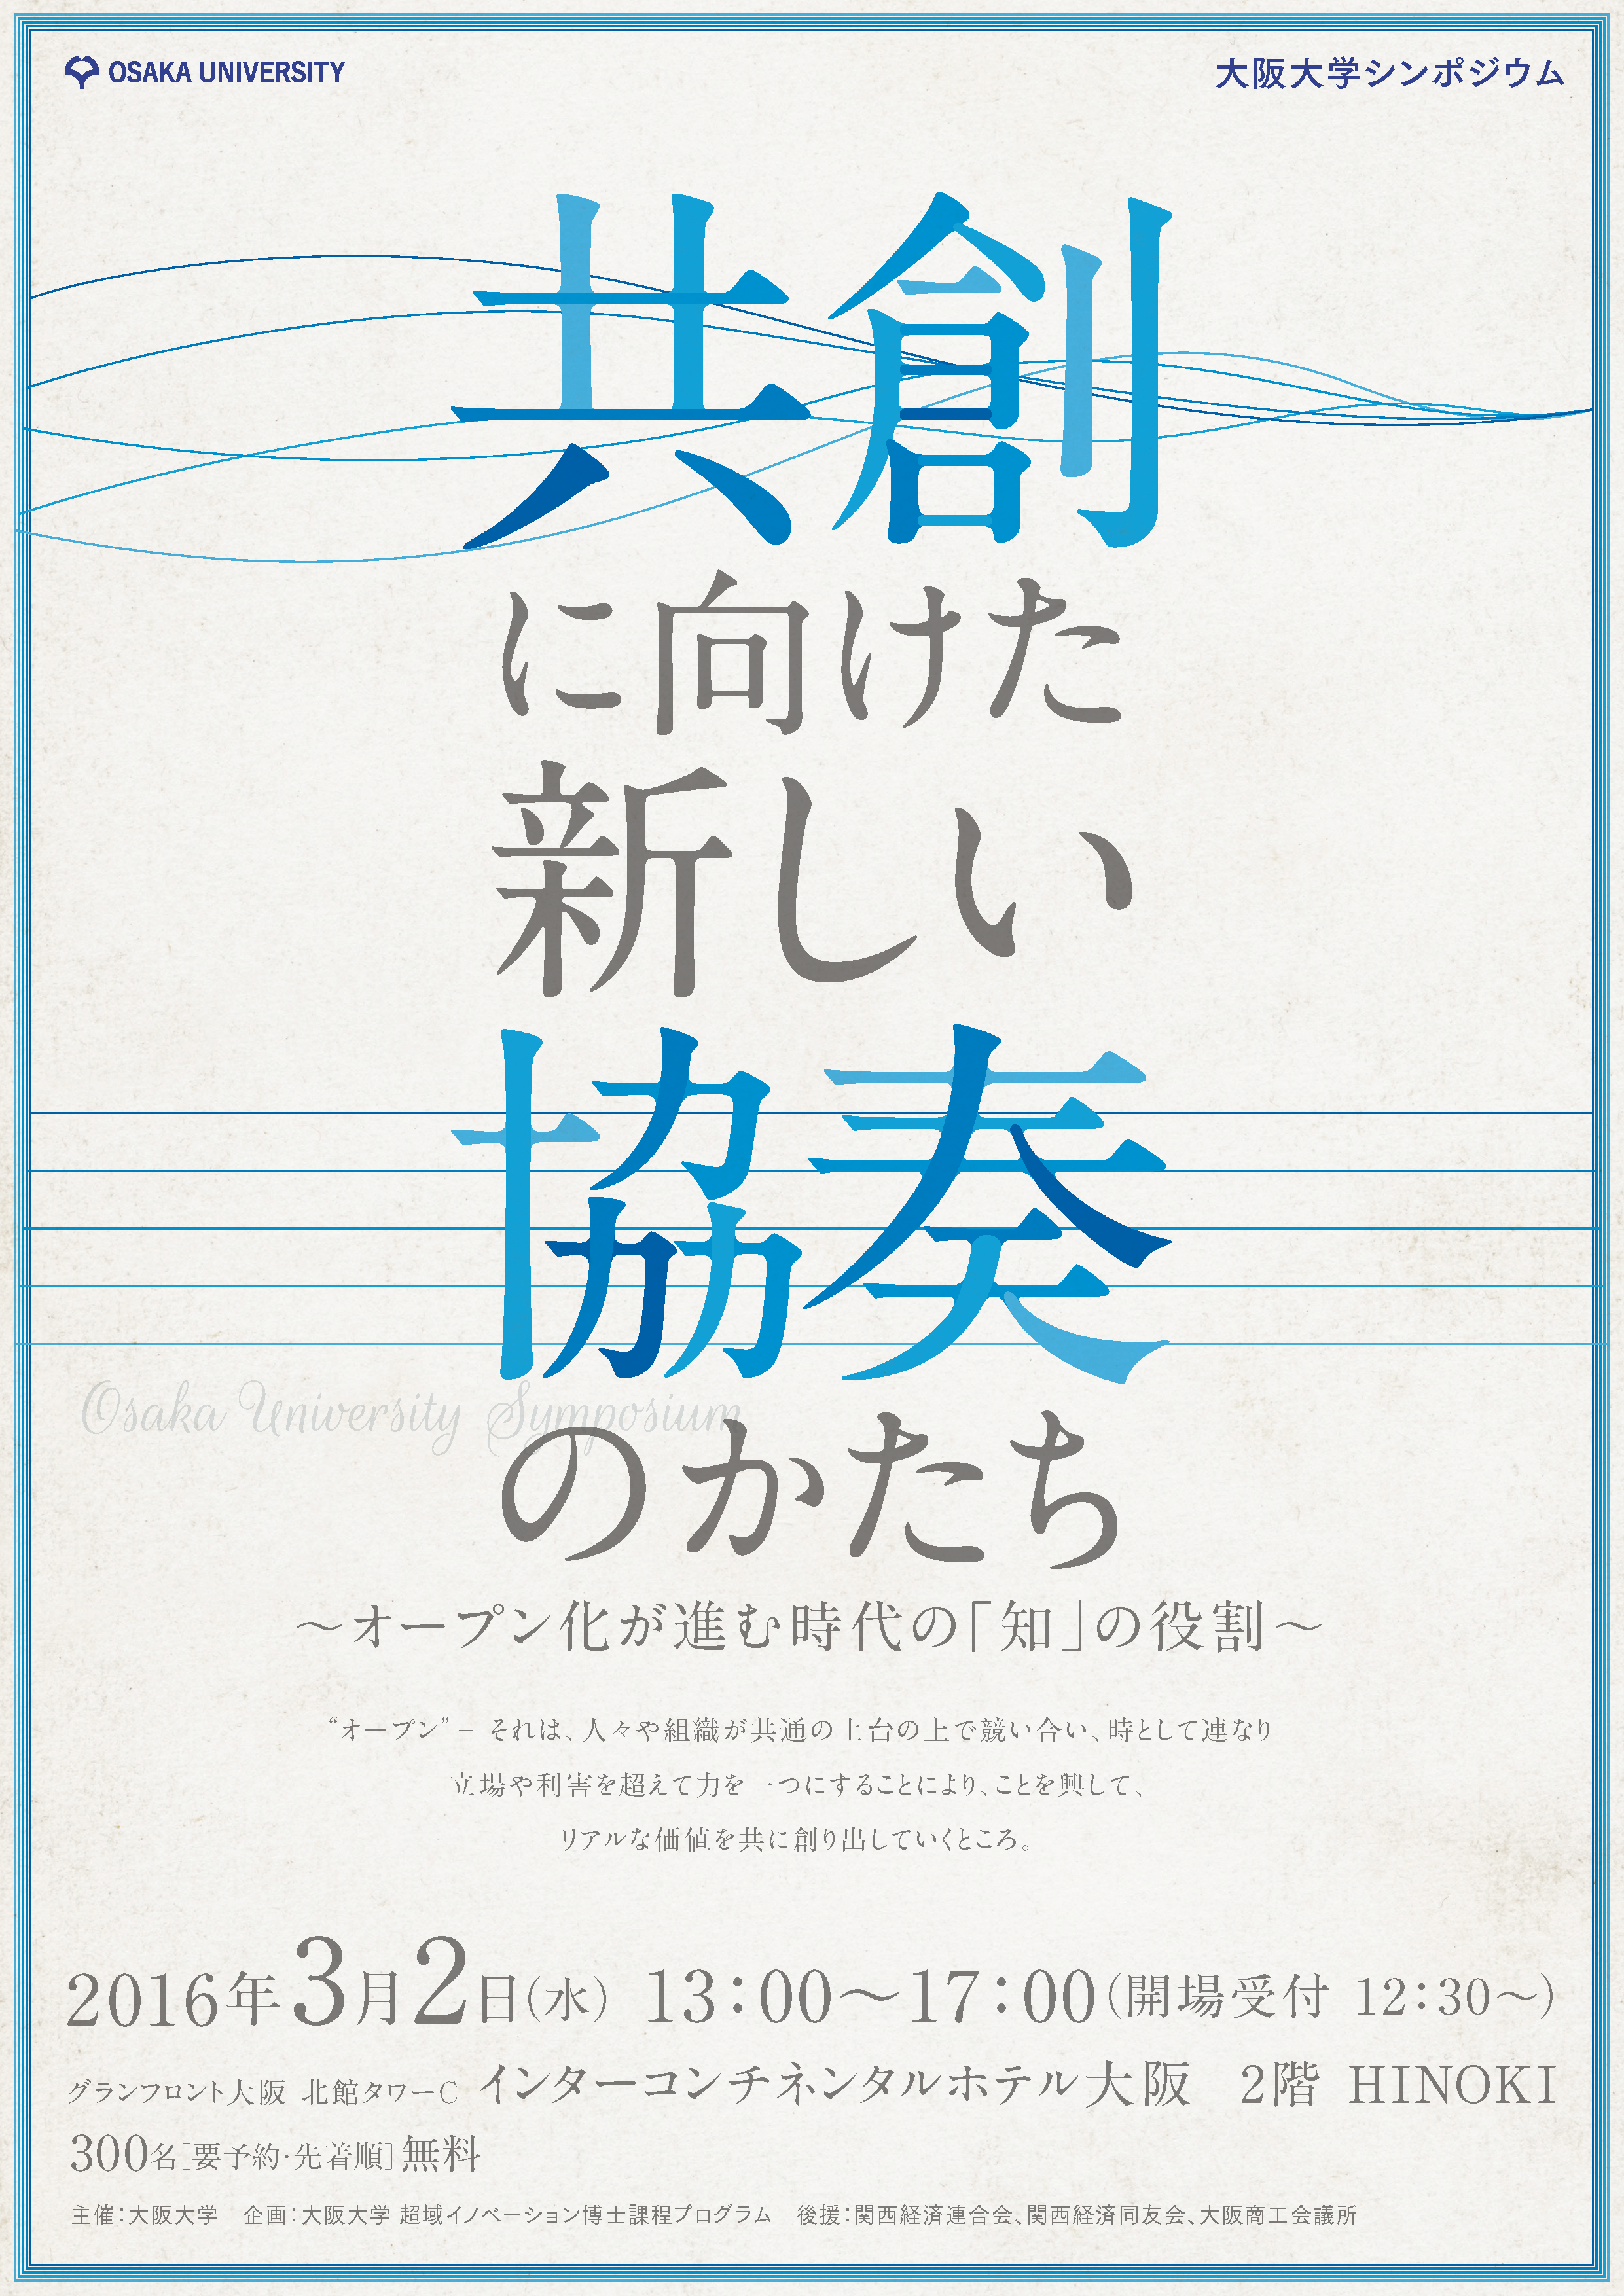 大阪大学シンポジウム「共創に向けた新しい協奏のかたち」を開催